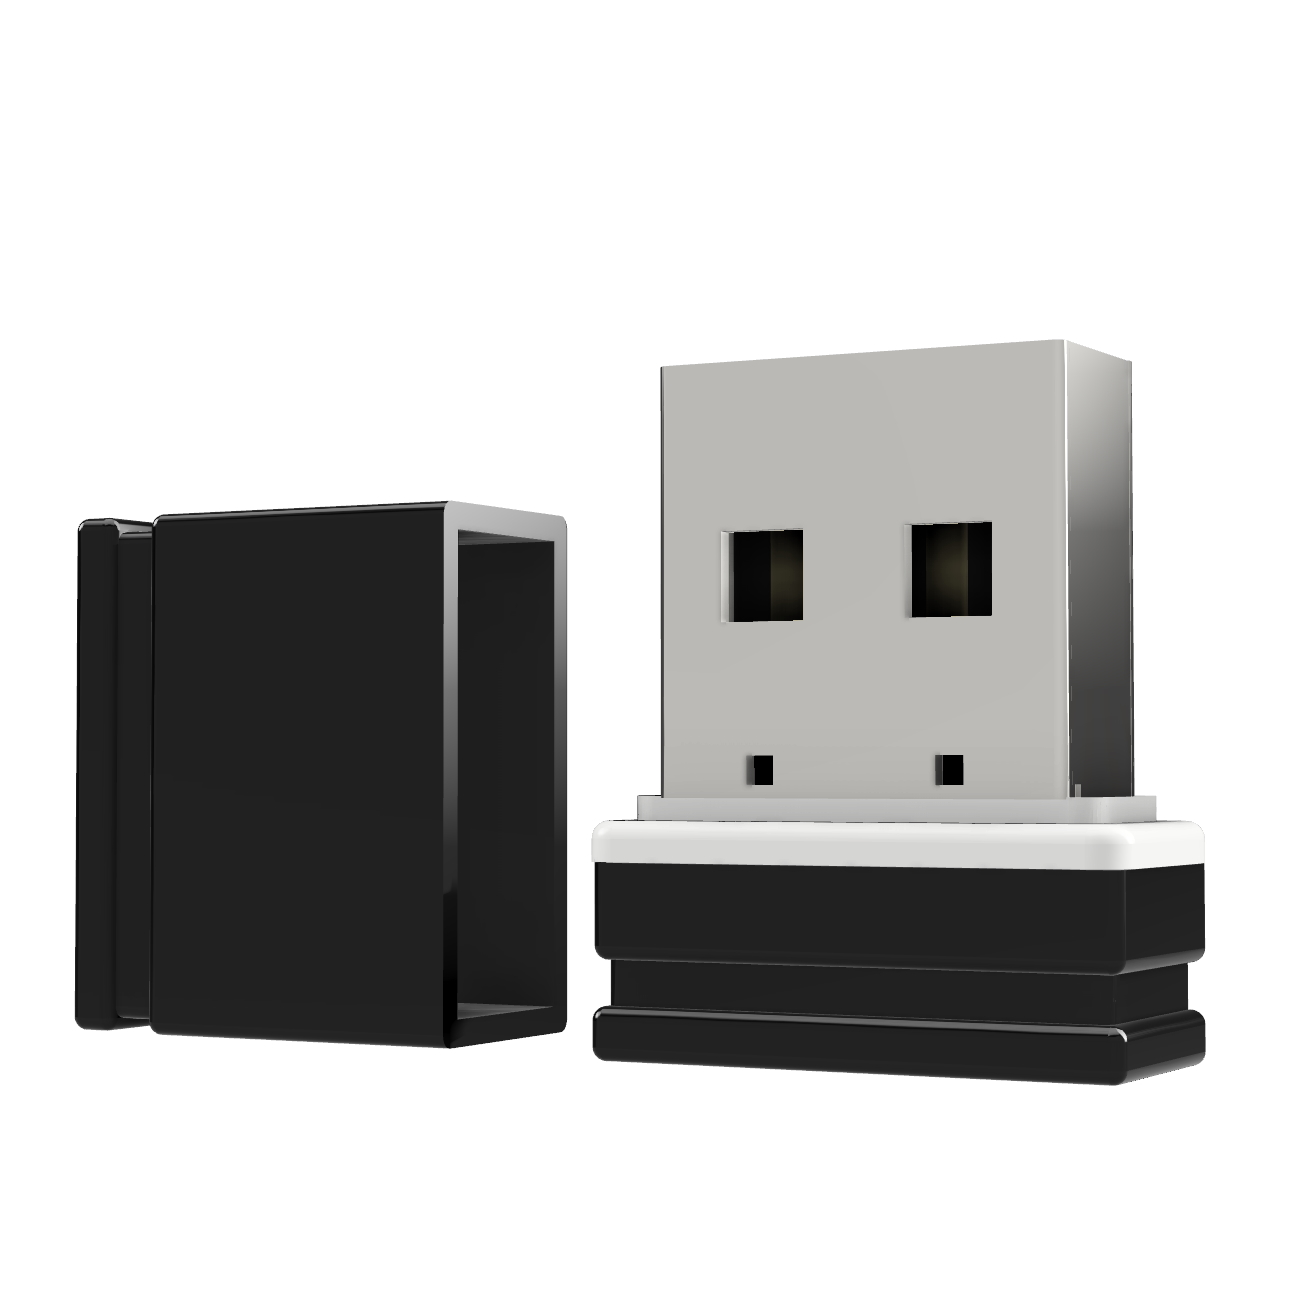 USB ®ULTRA USB-Stick P1 2 GB) Mini GERMANY (Schwarz/Weiss,